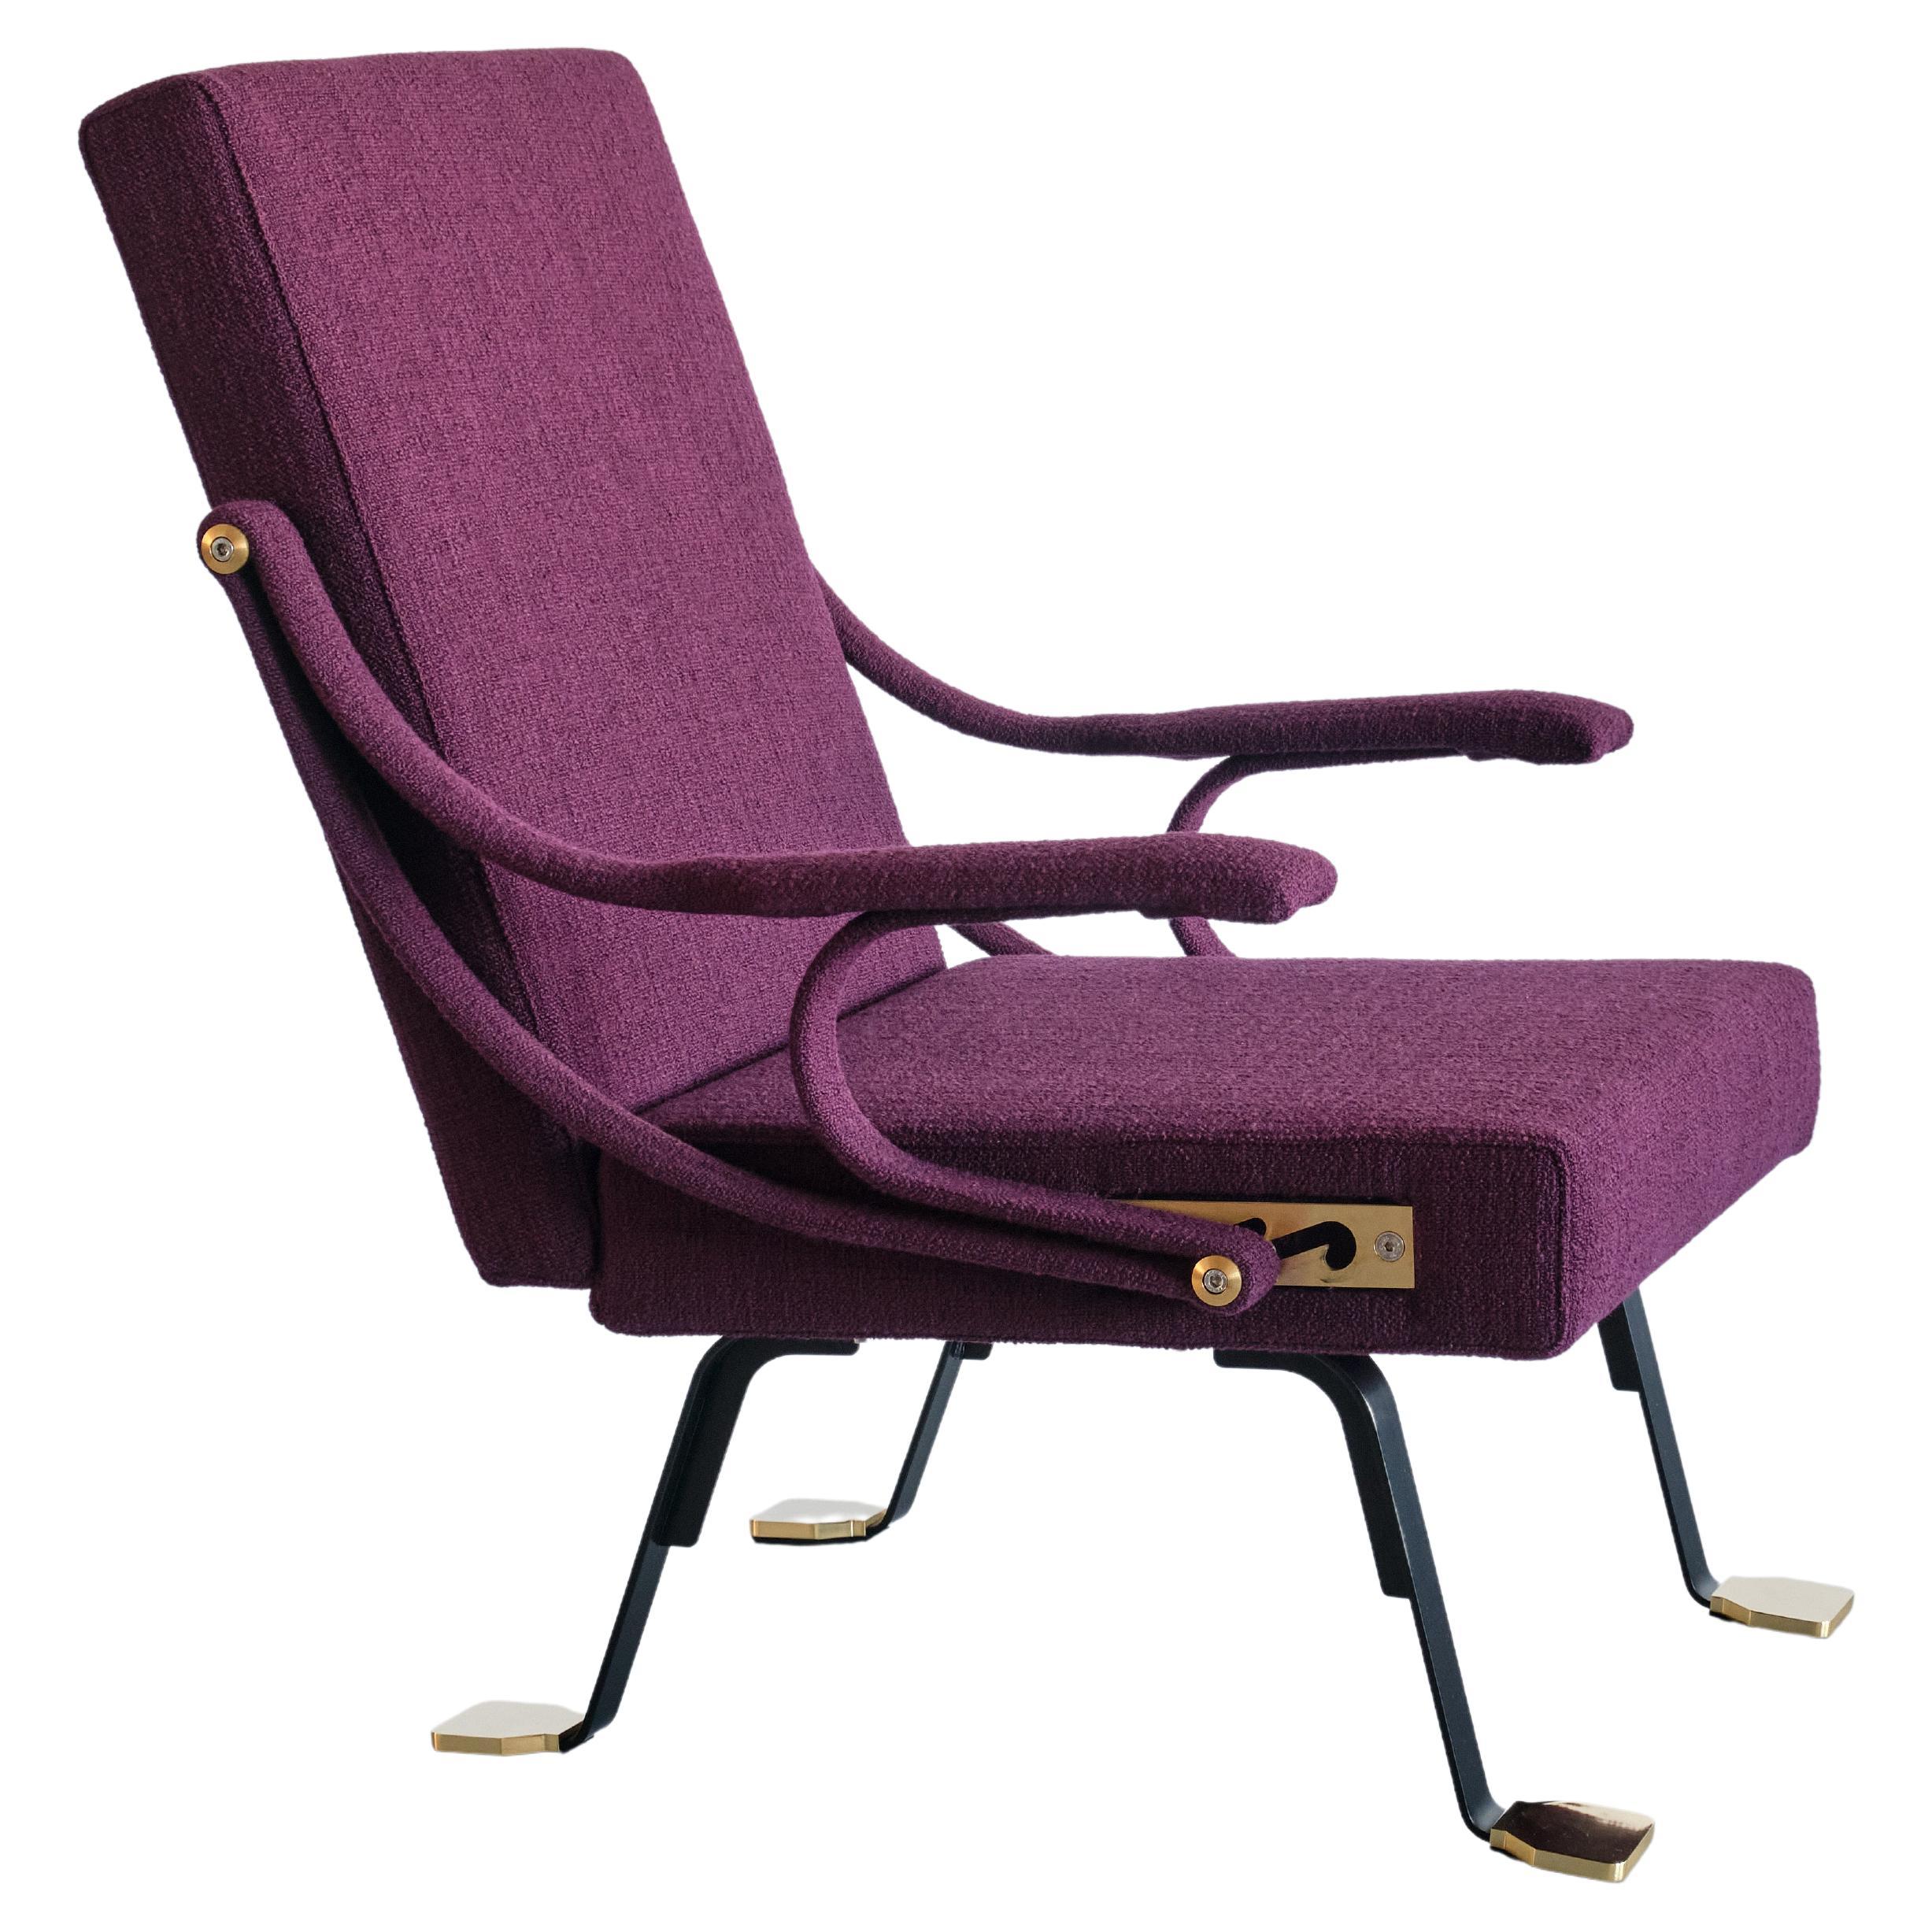 Ignazio Gardella 'Digamma' Armchair in Purple Dedar Fabric and Brass, 2022 For Sale